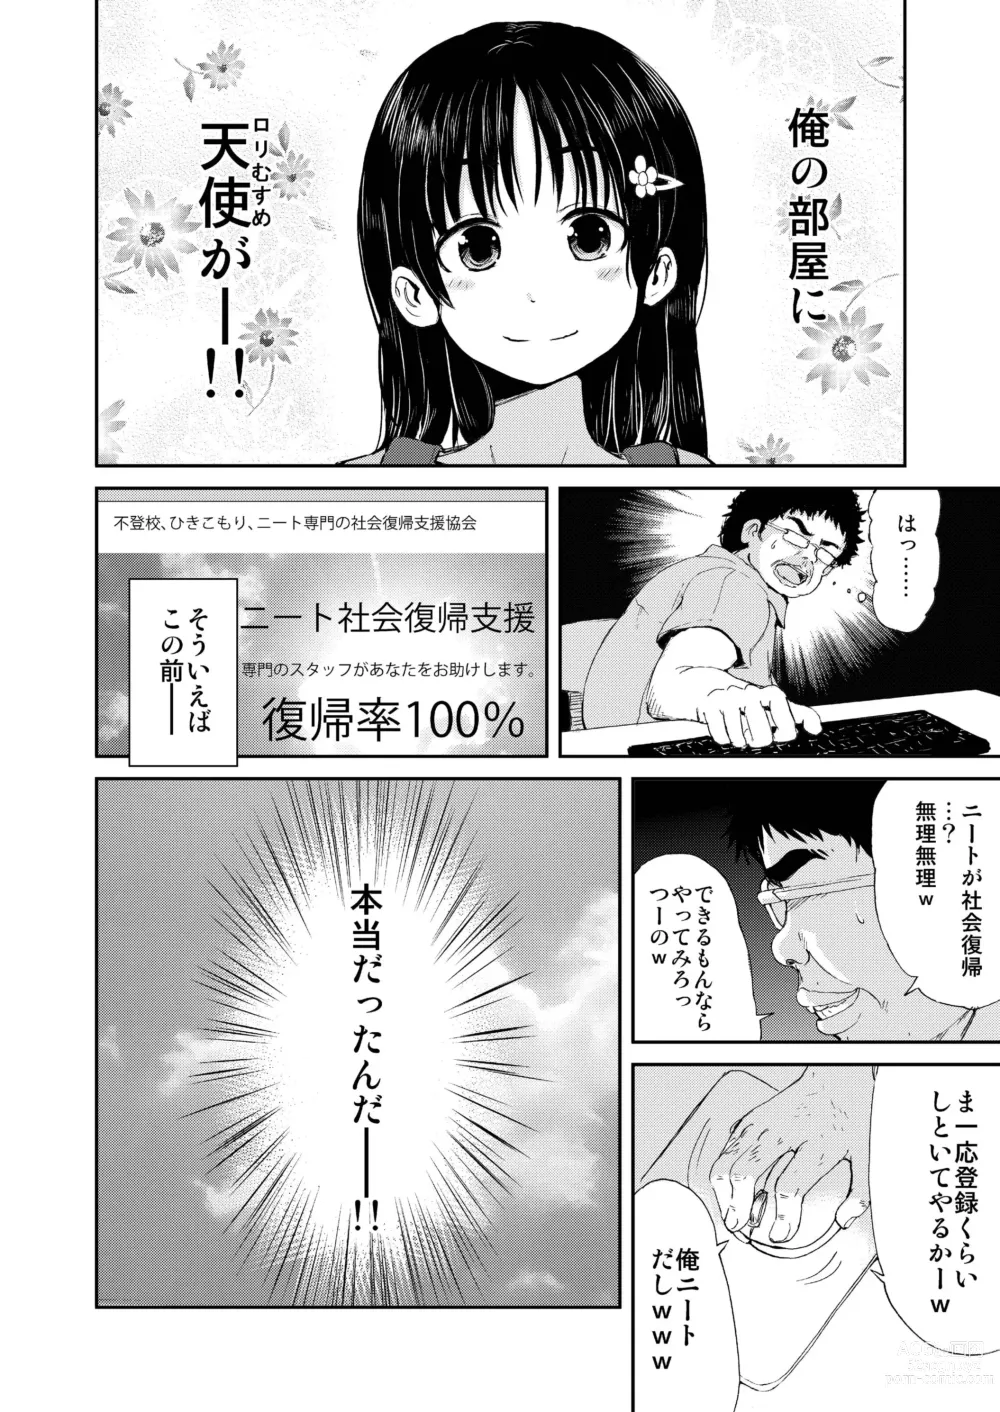 Page 4 of doujinshi Onii-chan, Shakai Fukki Shiyo